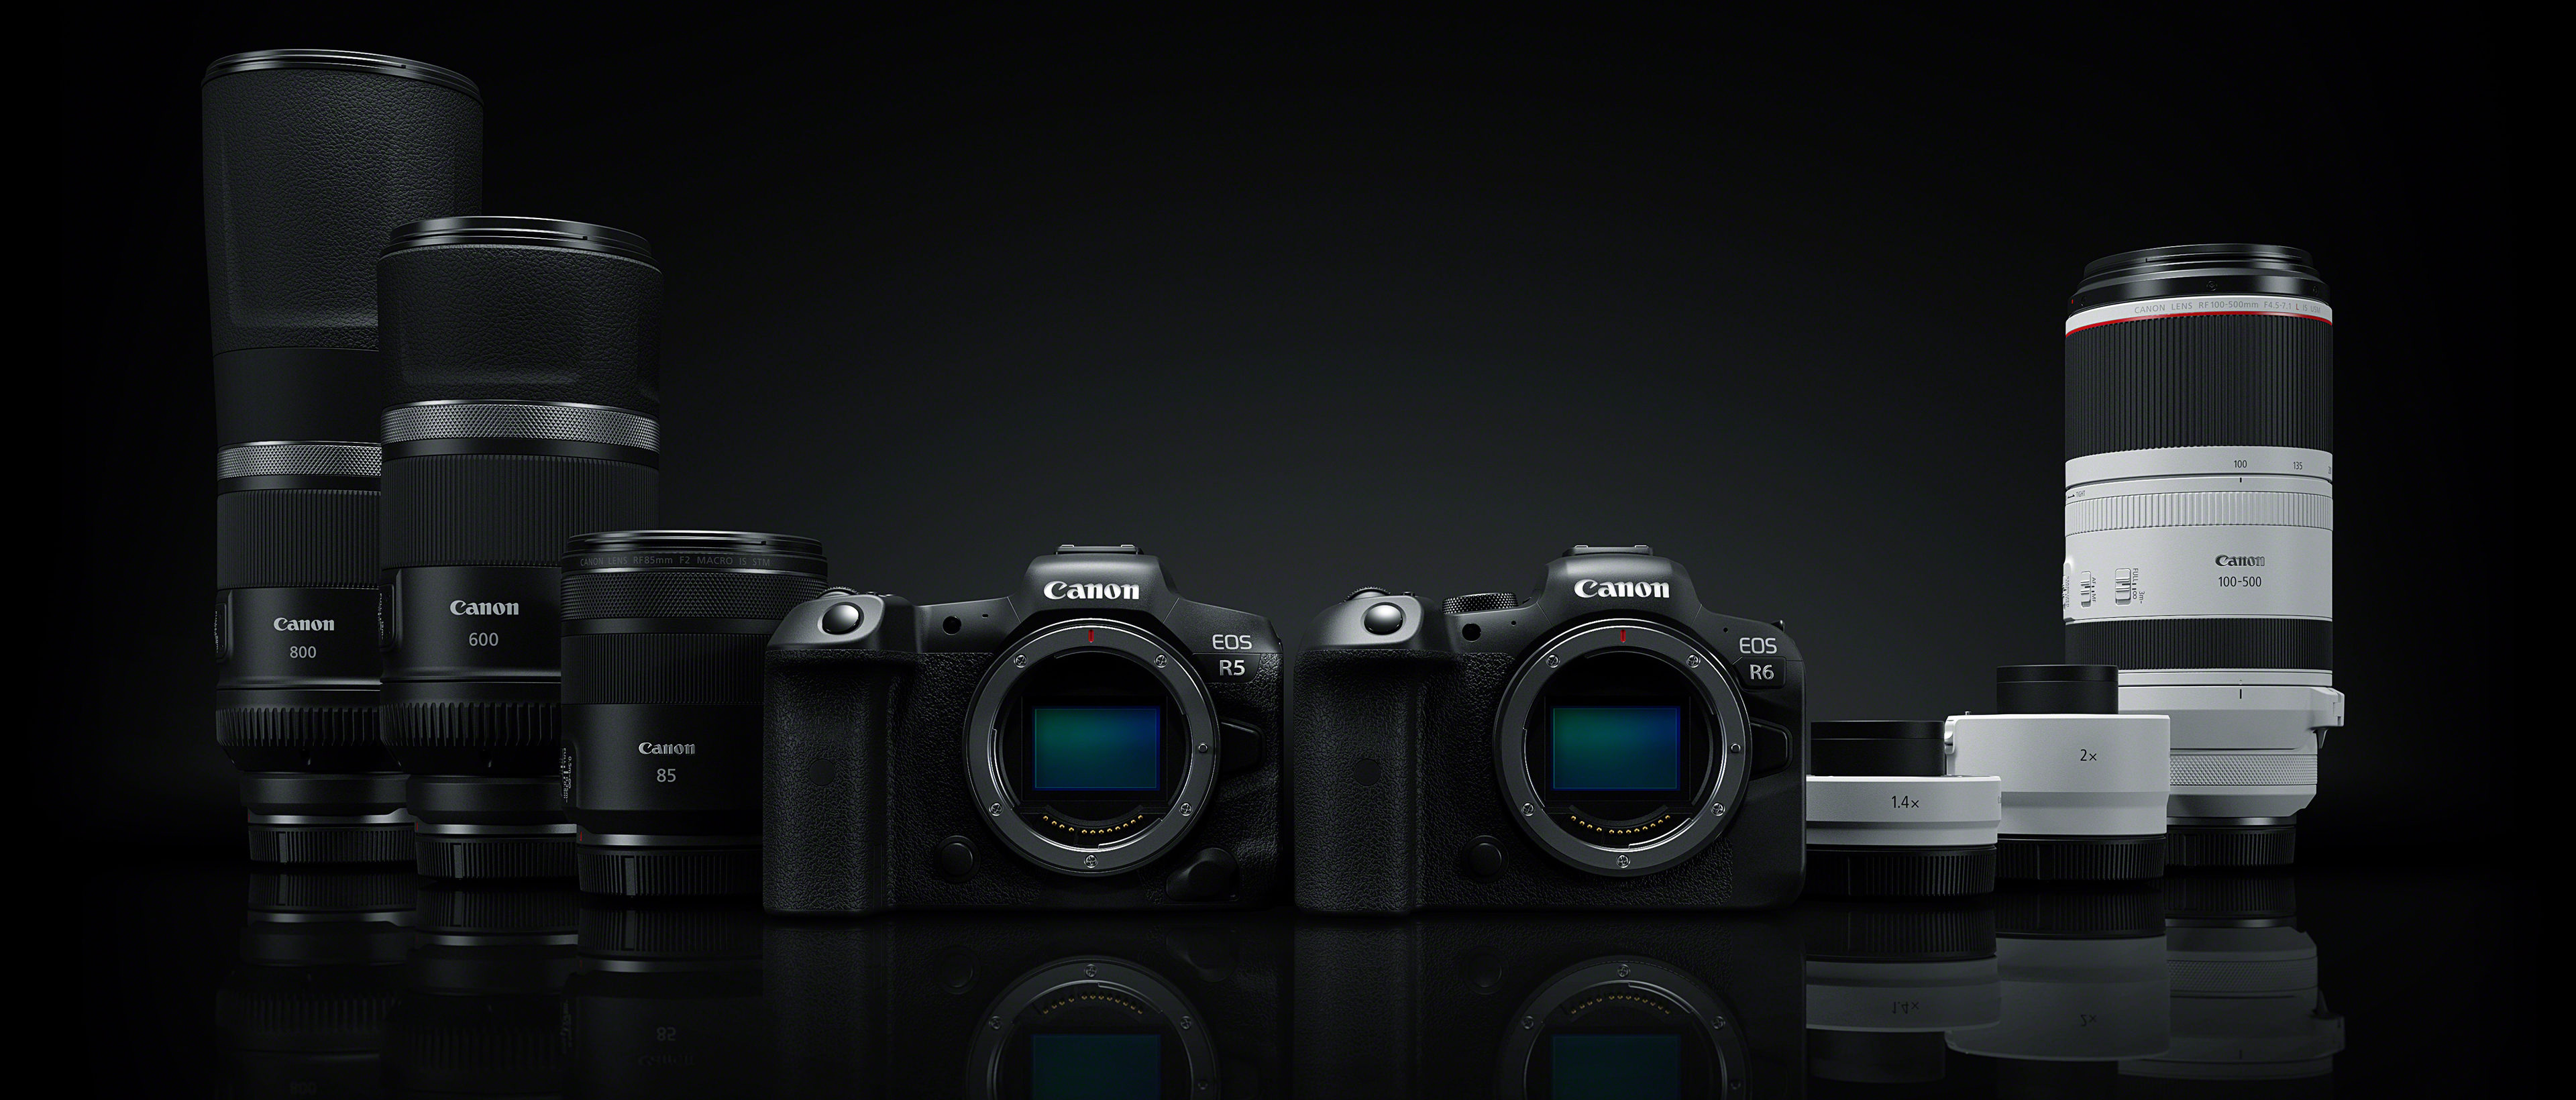 Preview Image: Spiegellos glücklich: Canon EOS R5 und EOS R6